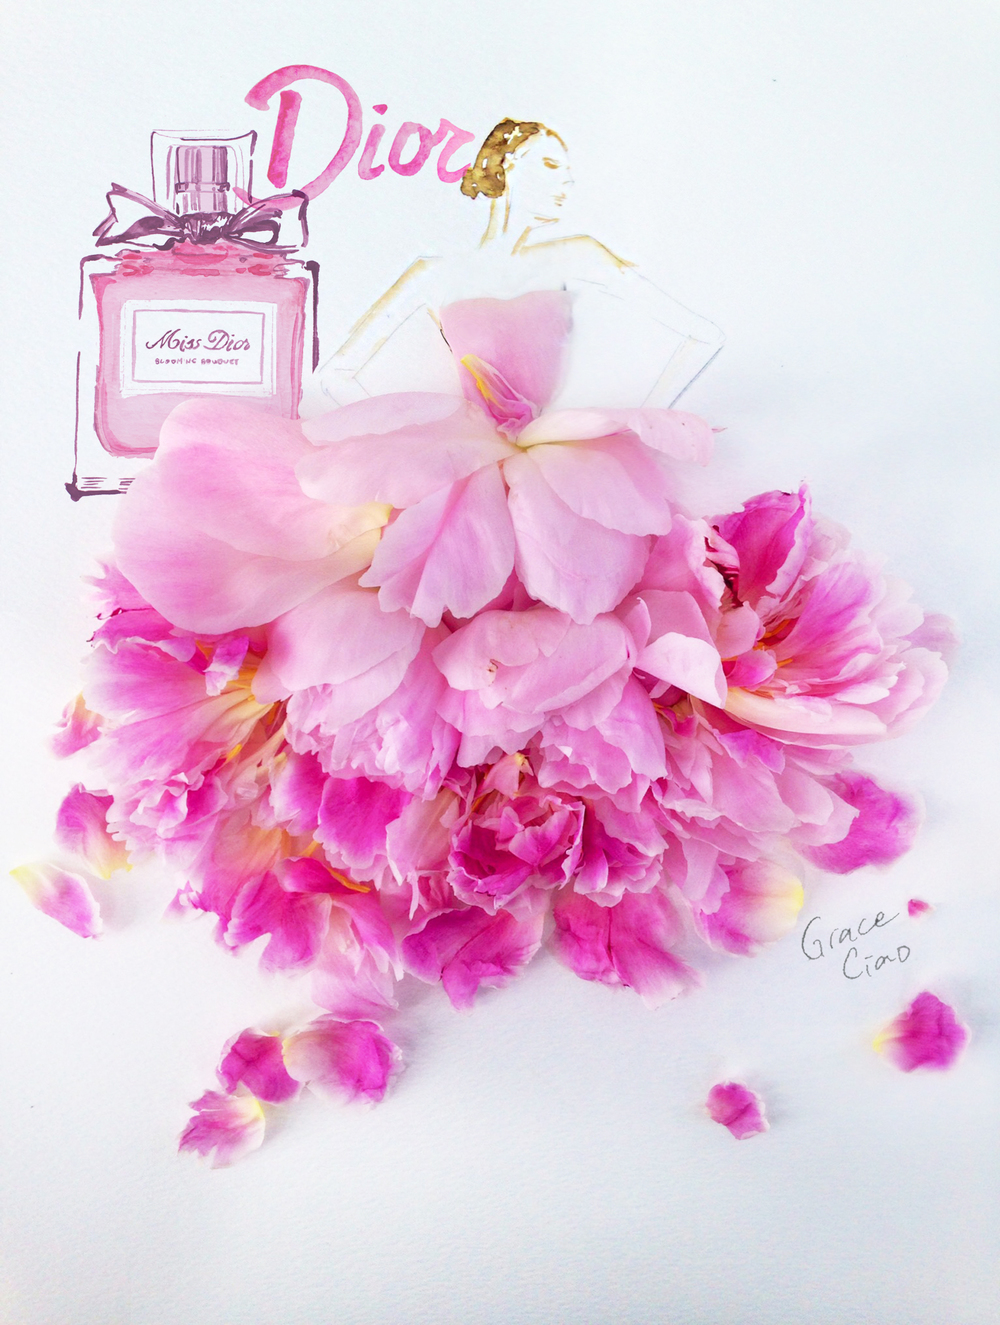 Saks Glam Gardens - Dior — Grace Ciao